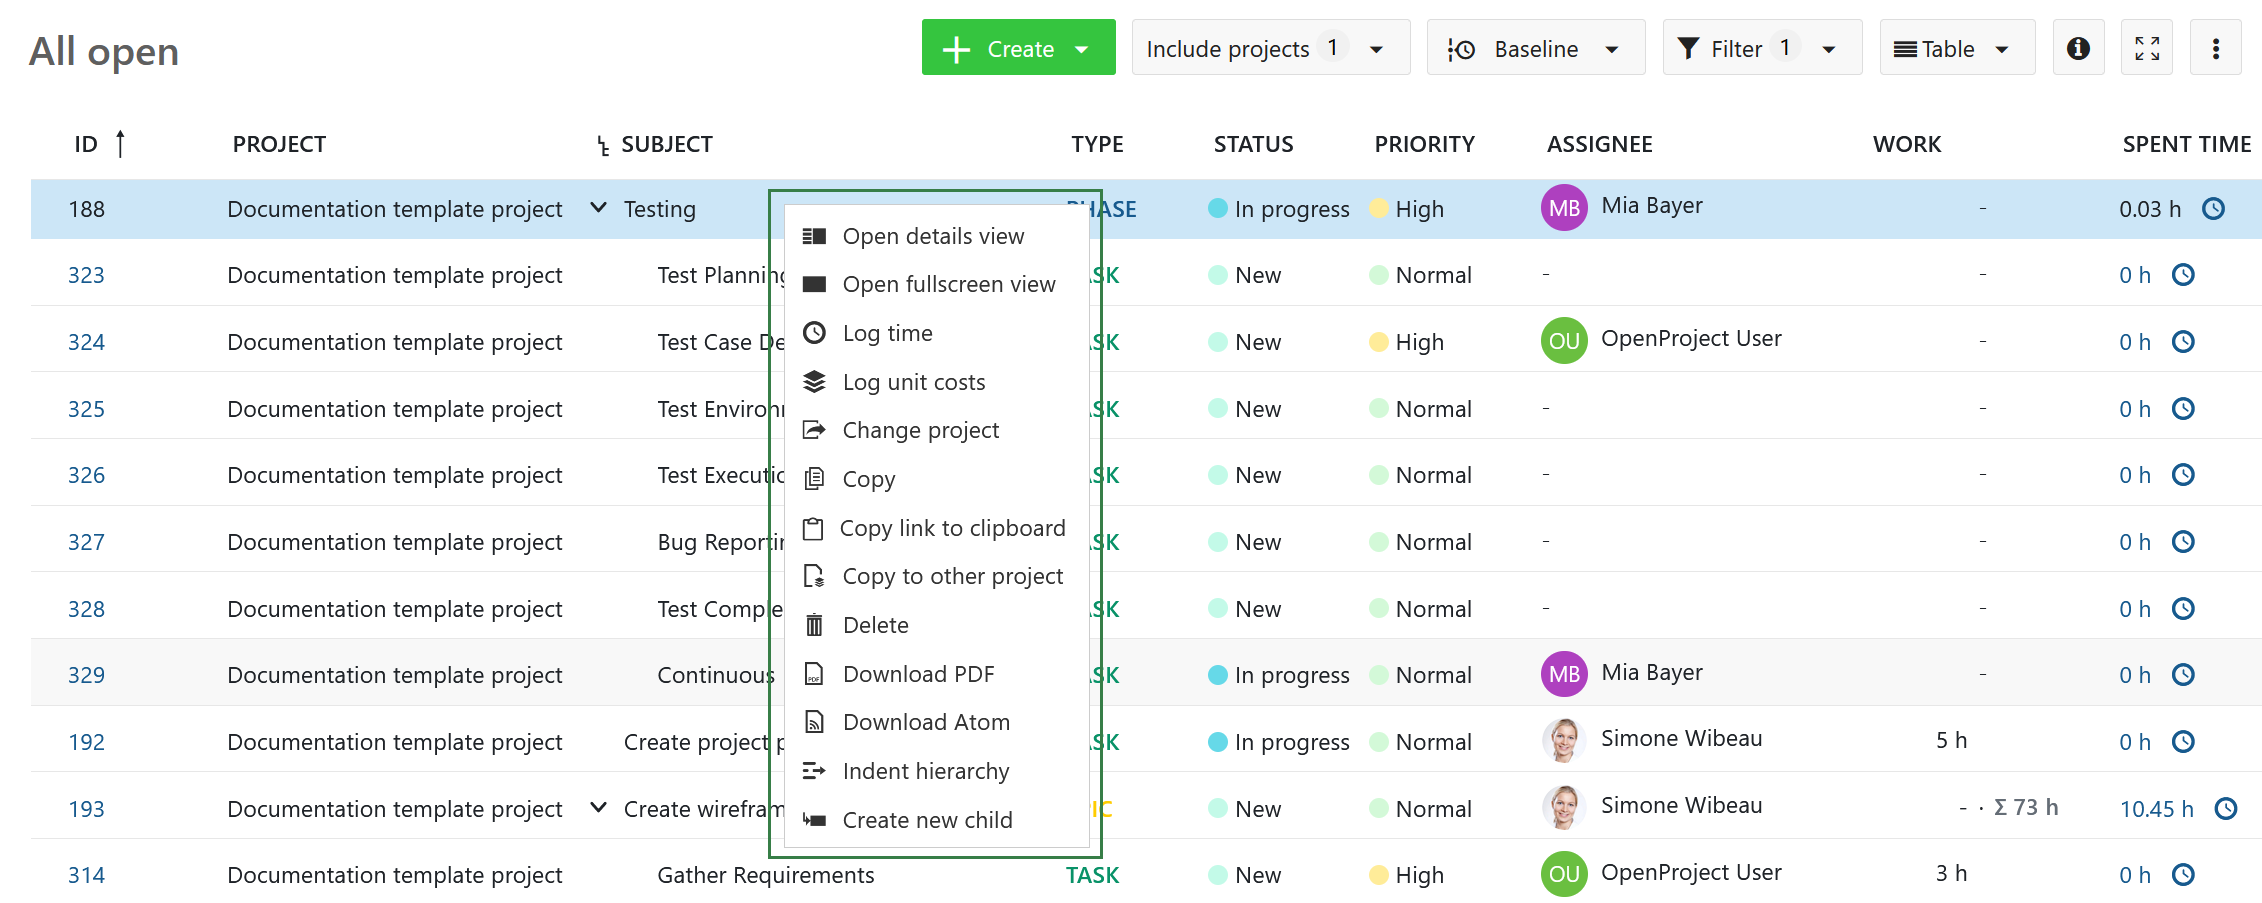 Menú contextual rápido en la tabla de paquetes de trabajo de OpenProject